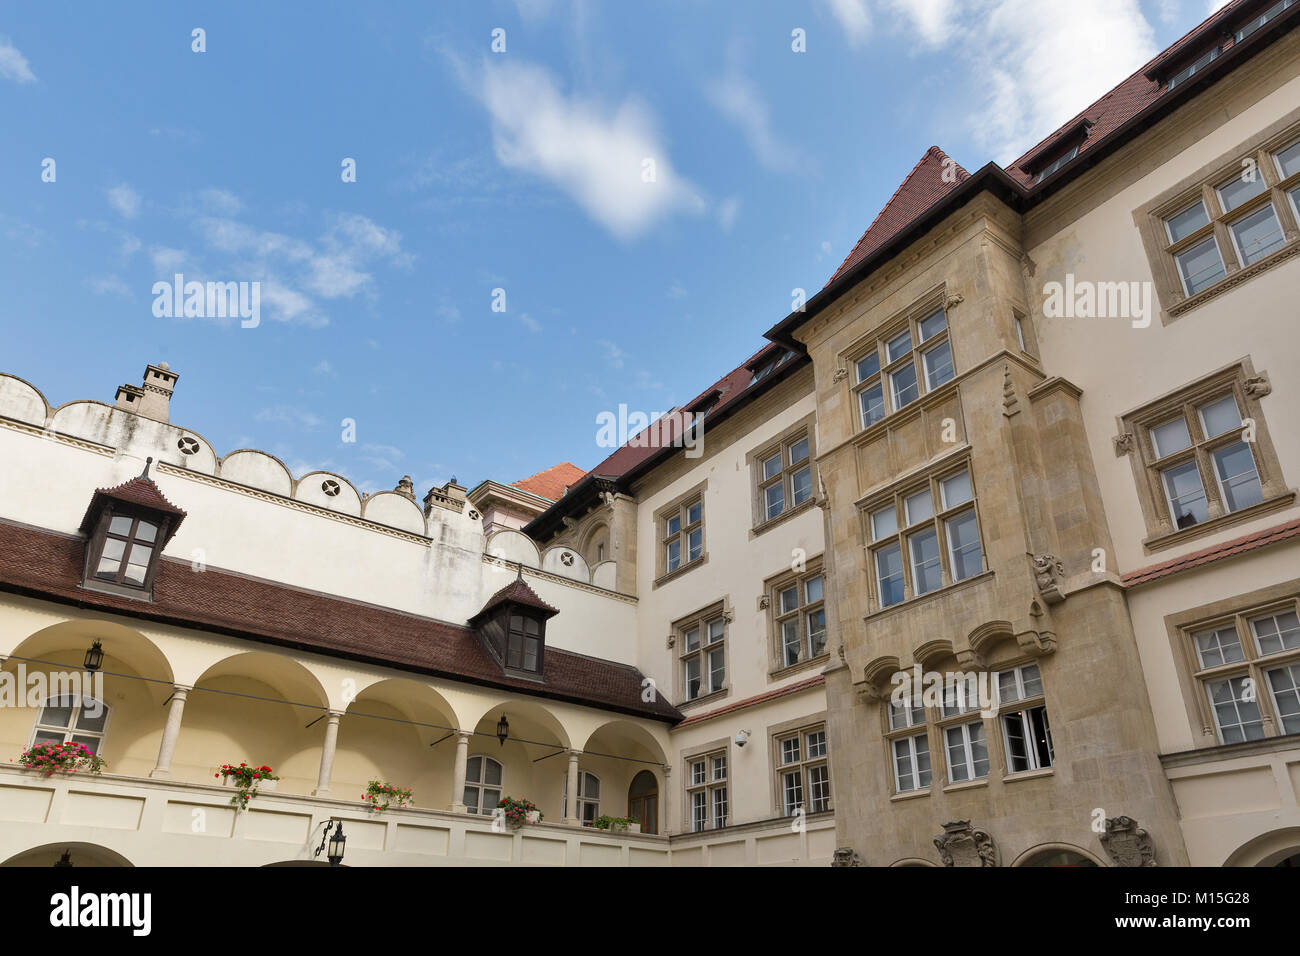 Au cour du palais Primate Primacialne namestie ( Primat square ) dans la vieille ville de Bratislava, Slovaquie. Banque D'Images